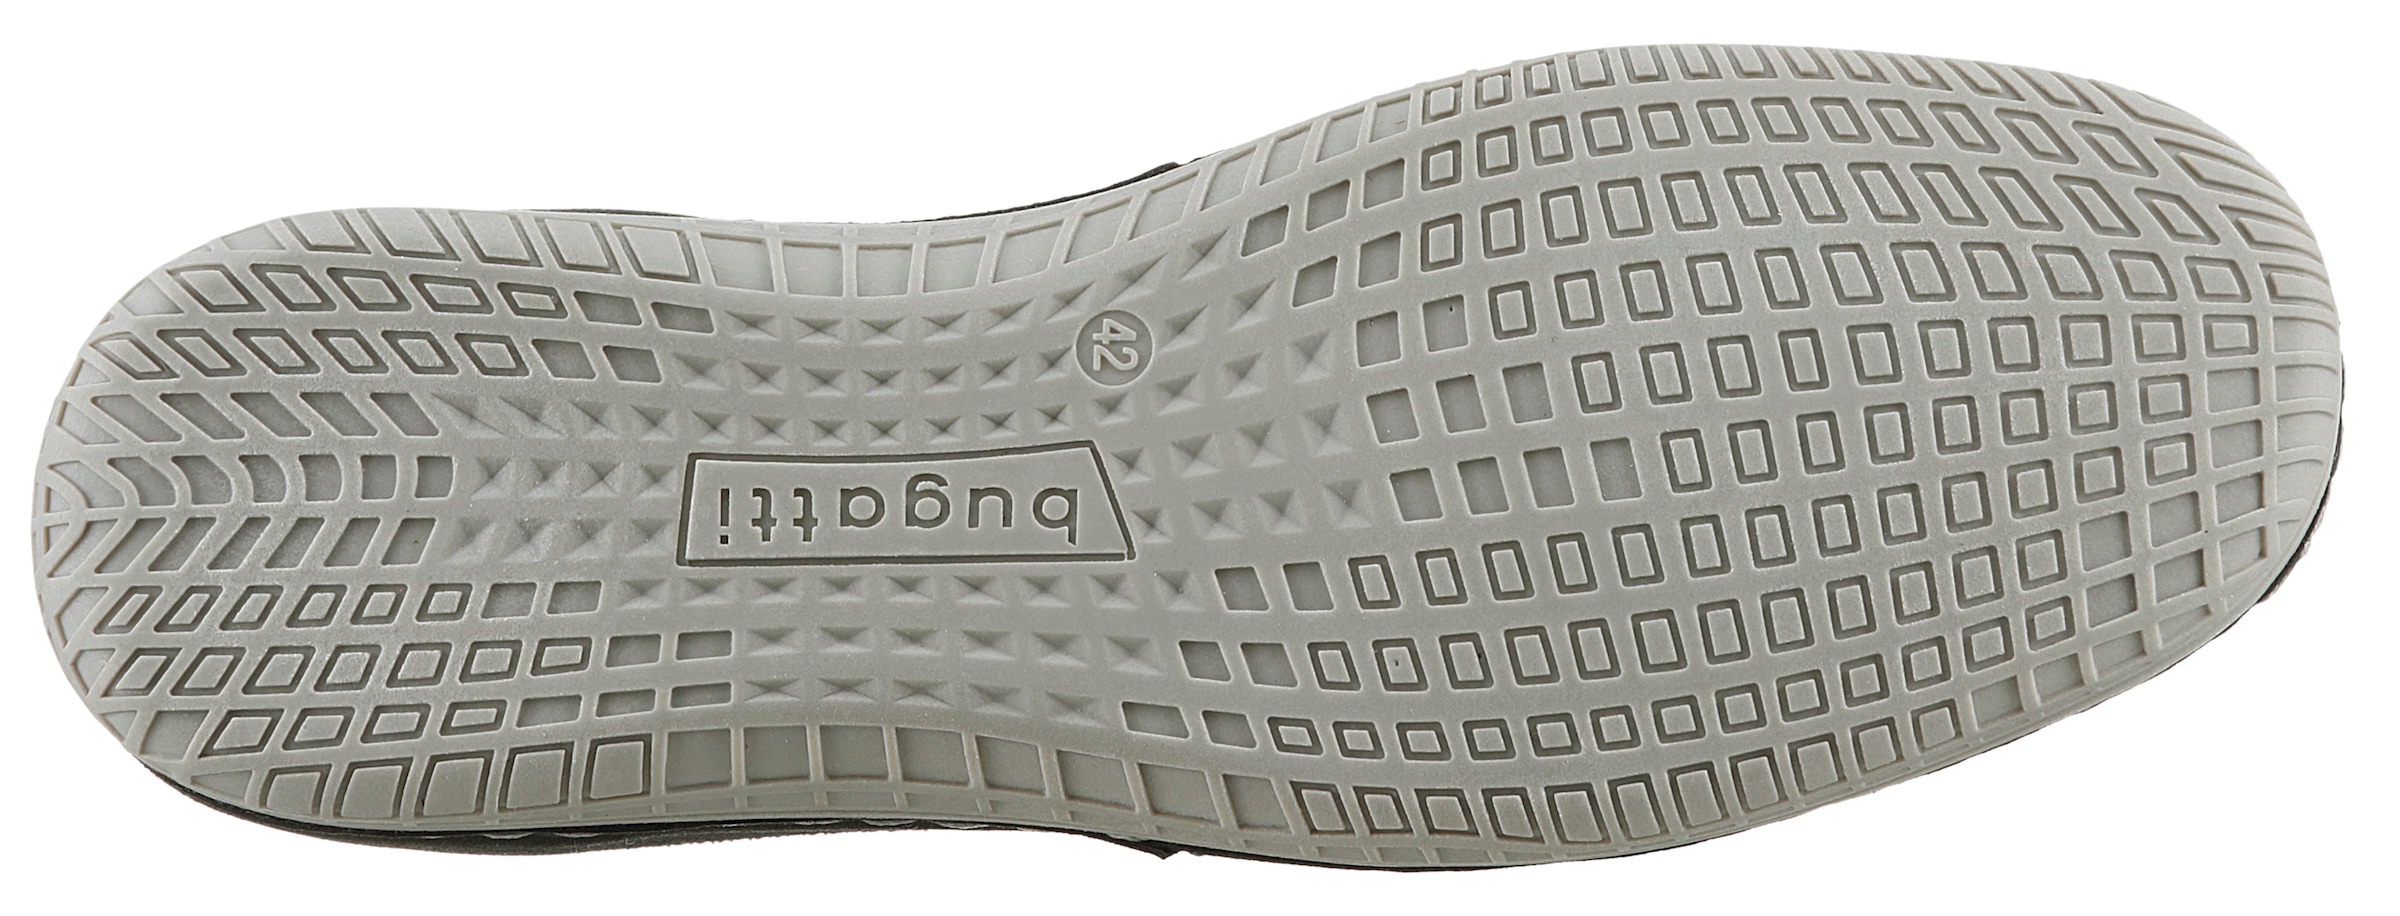 bugatti Sneaker, mit markantem Logoschriftzug, Freizeitschuh, Halbschuh, Schnürschuh